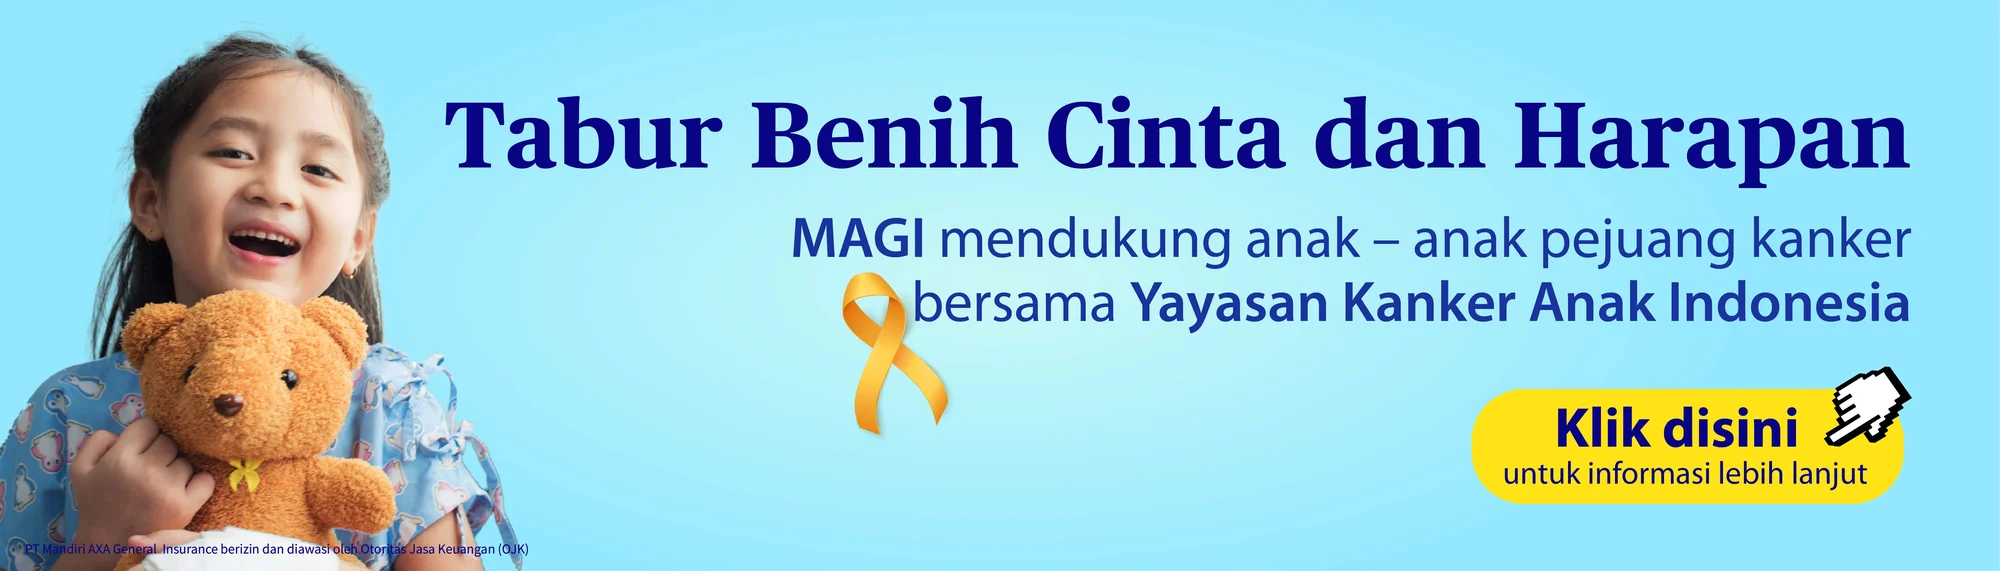 tag-tabur-benih-cinta-dan-harapan-bersama-yayasan-kanker-anak-indonesia